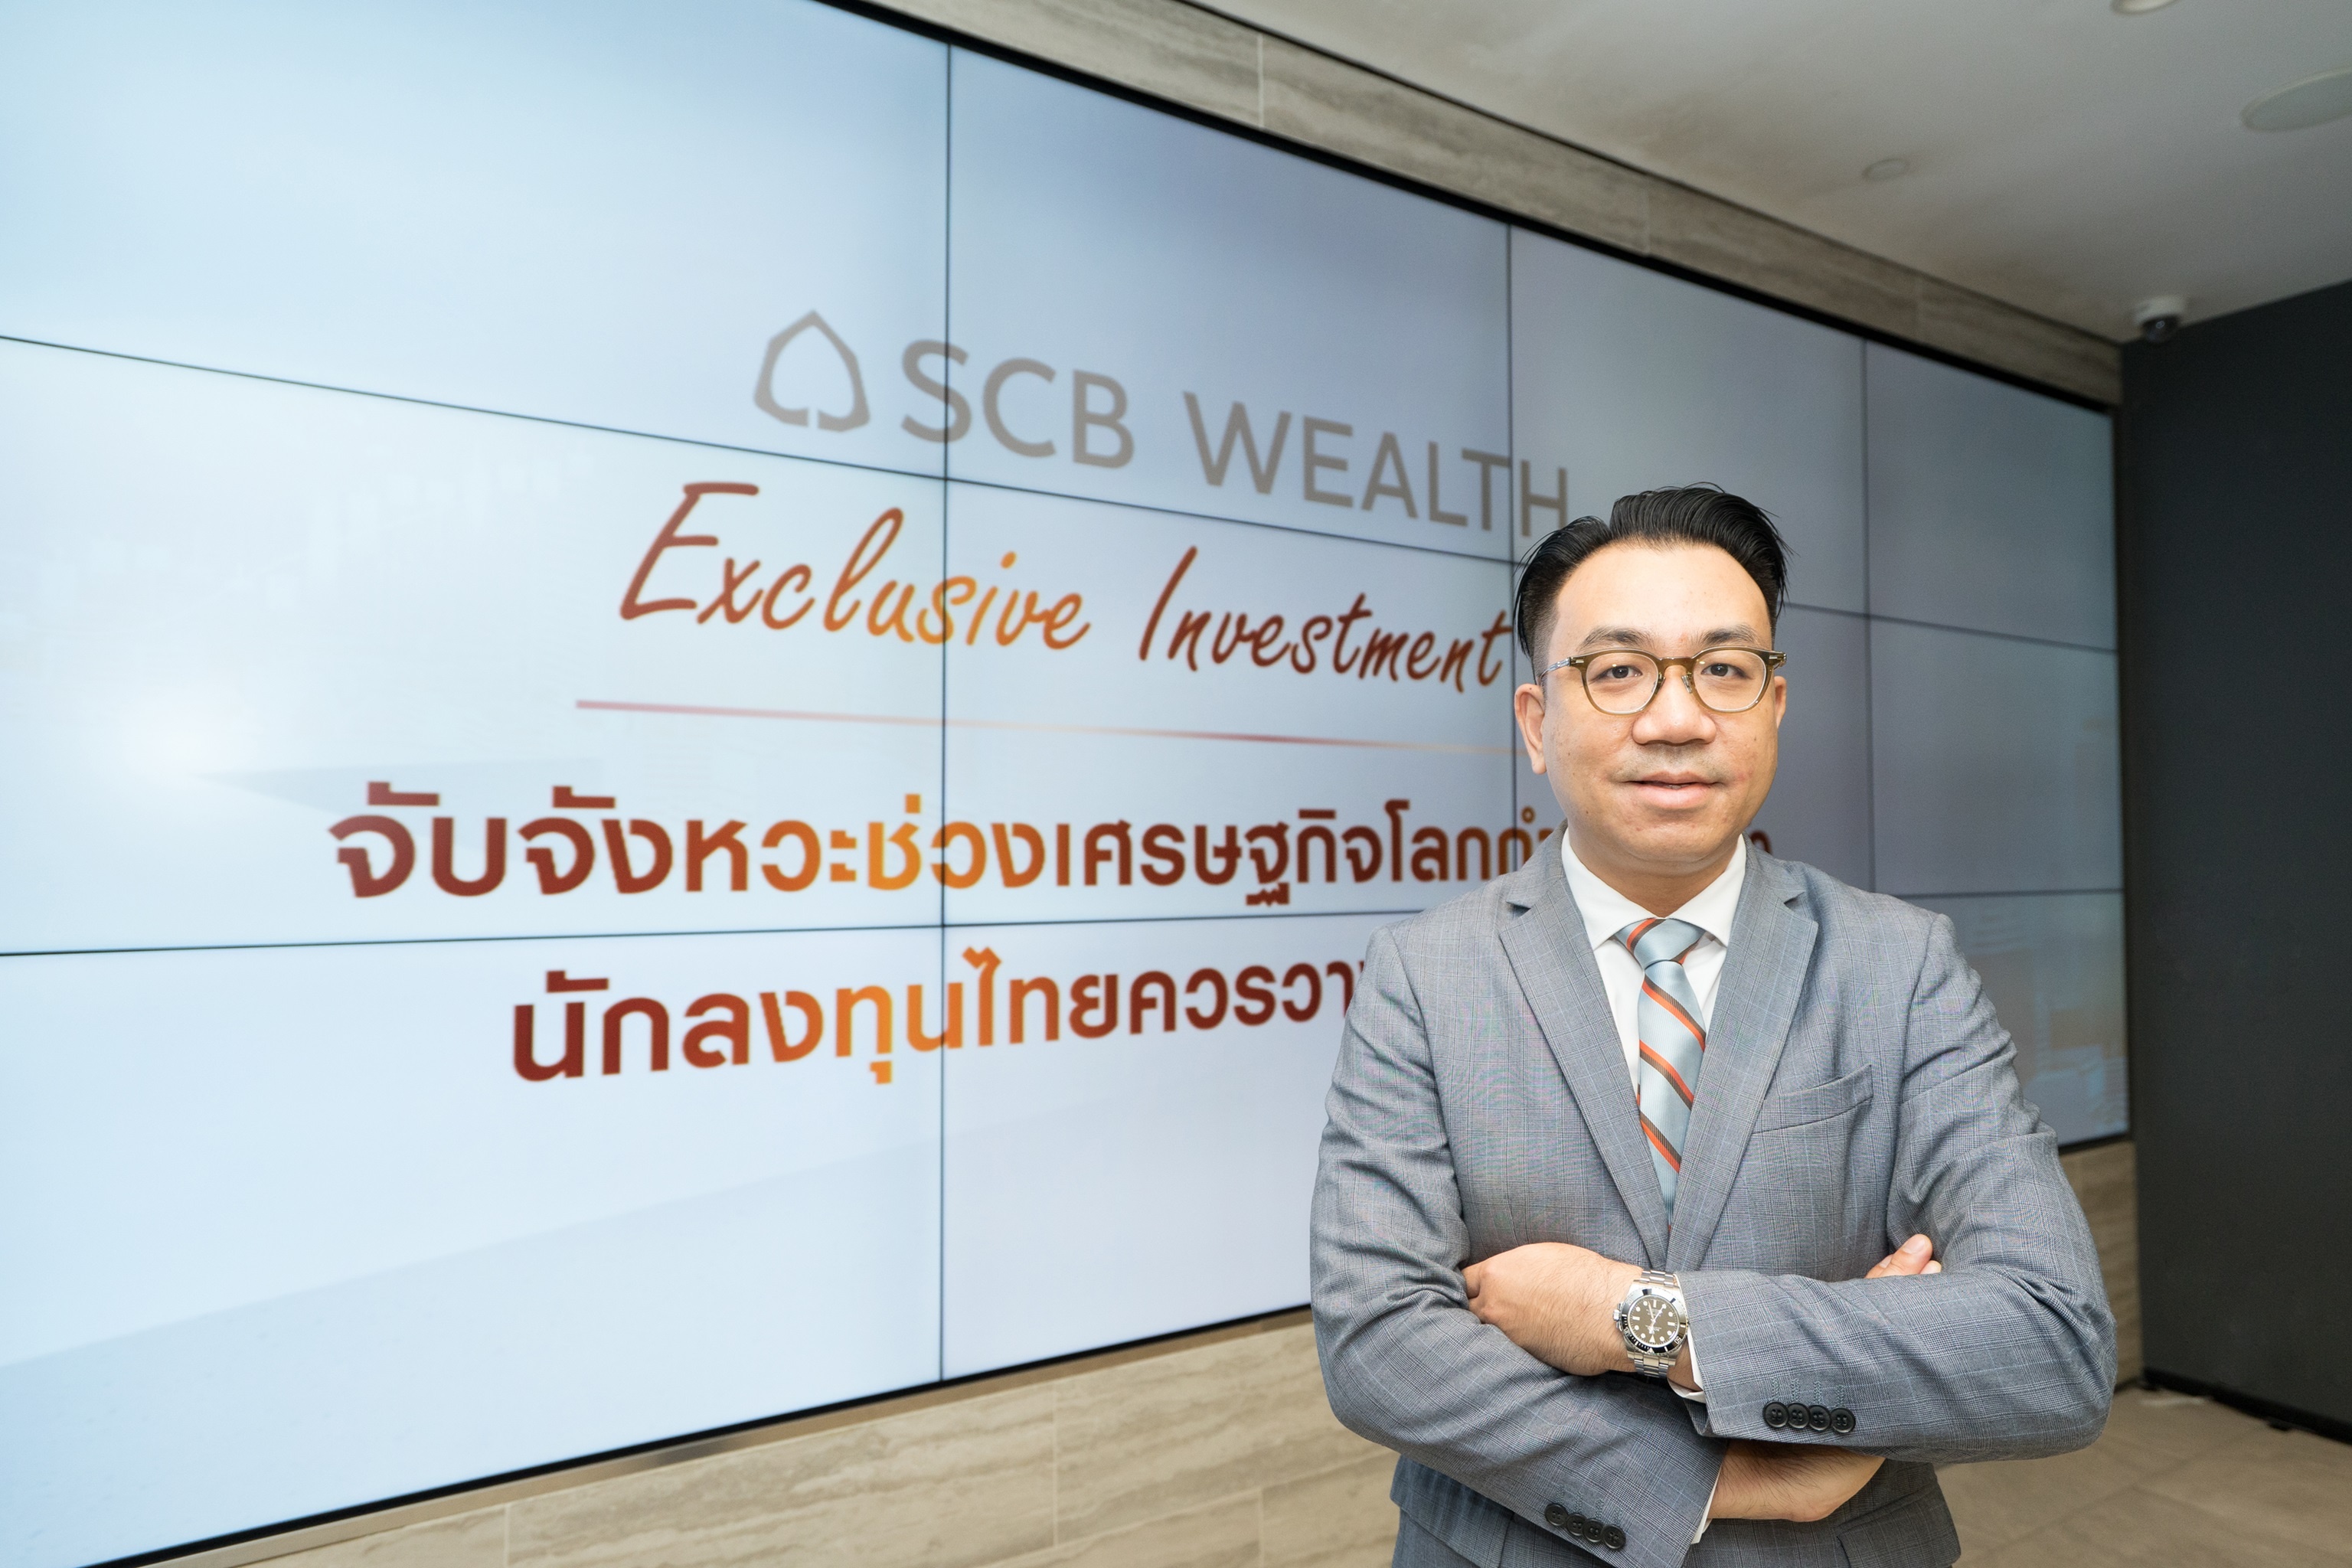 นายภัควี ณรงค์โชติกุล ผู้จัดการเขตพื้นที่ Investment Center ธนาคารไทยพาณิชย์ (1).jpg